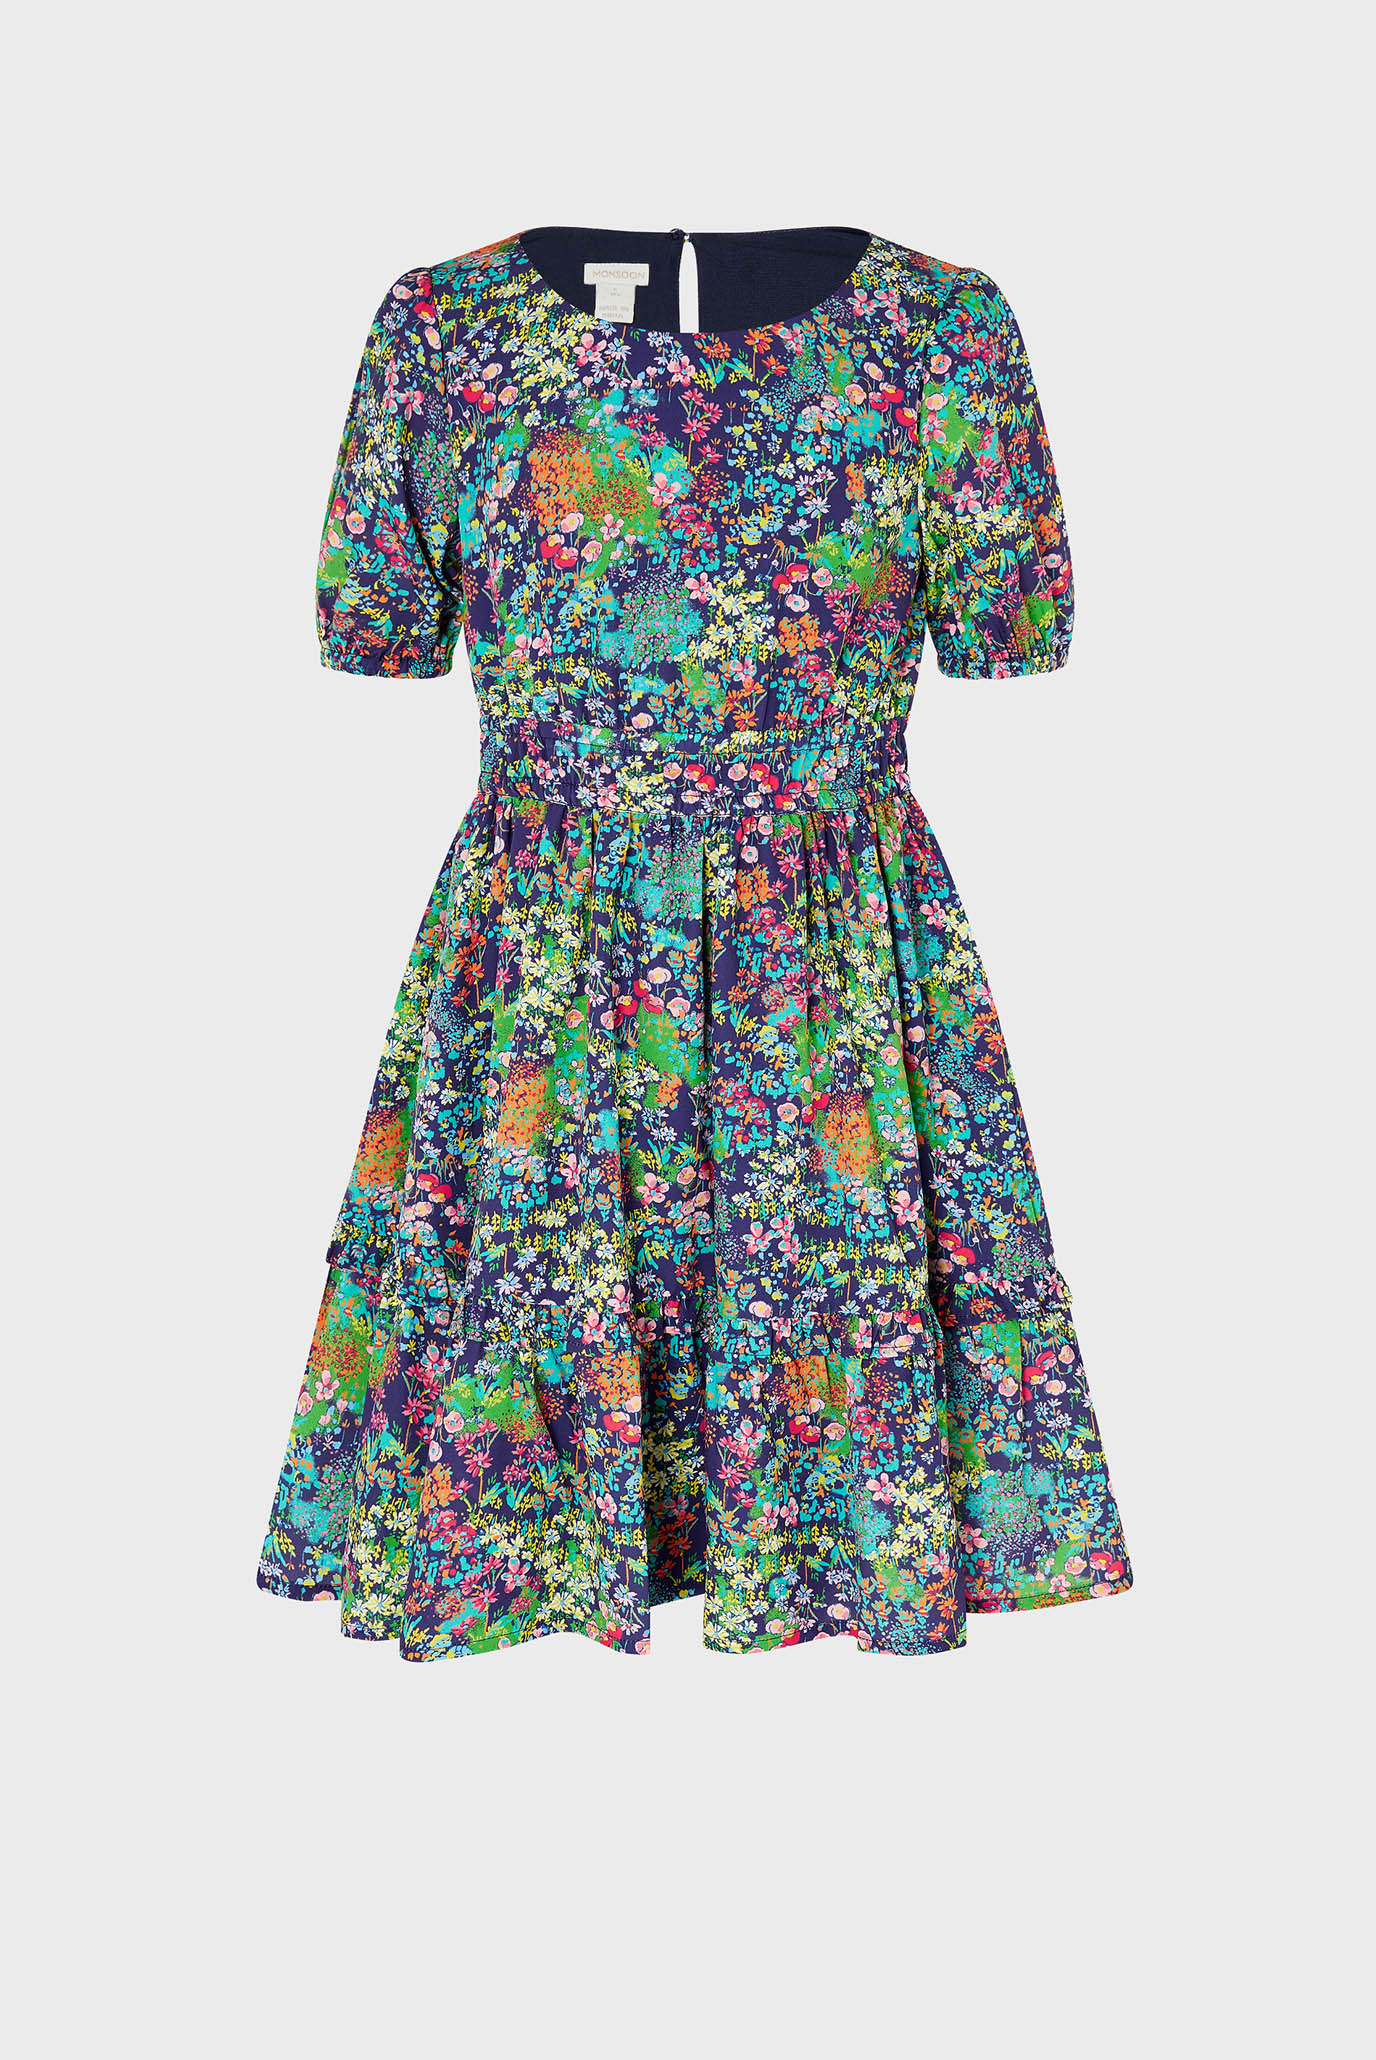 Дитяча темно-синя сукня WILD FLOWER DRESS SE 1